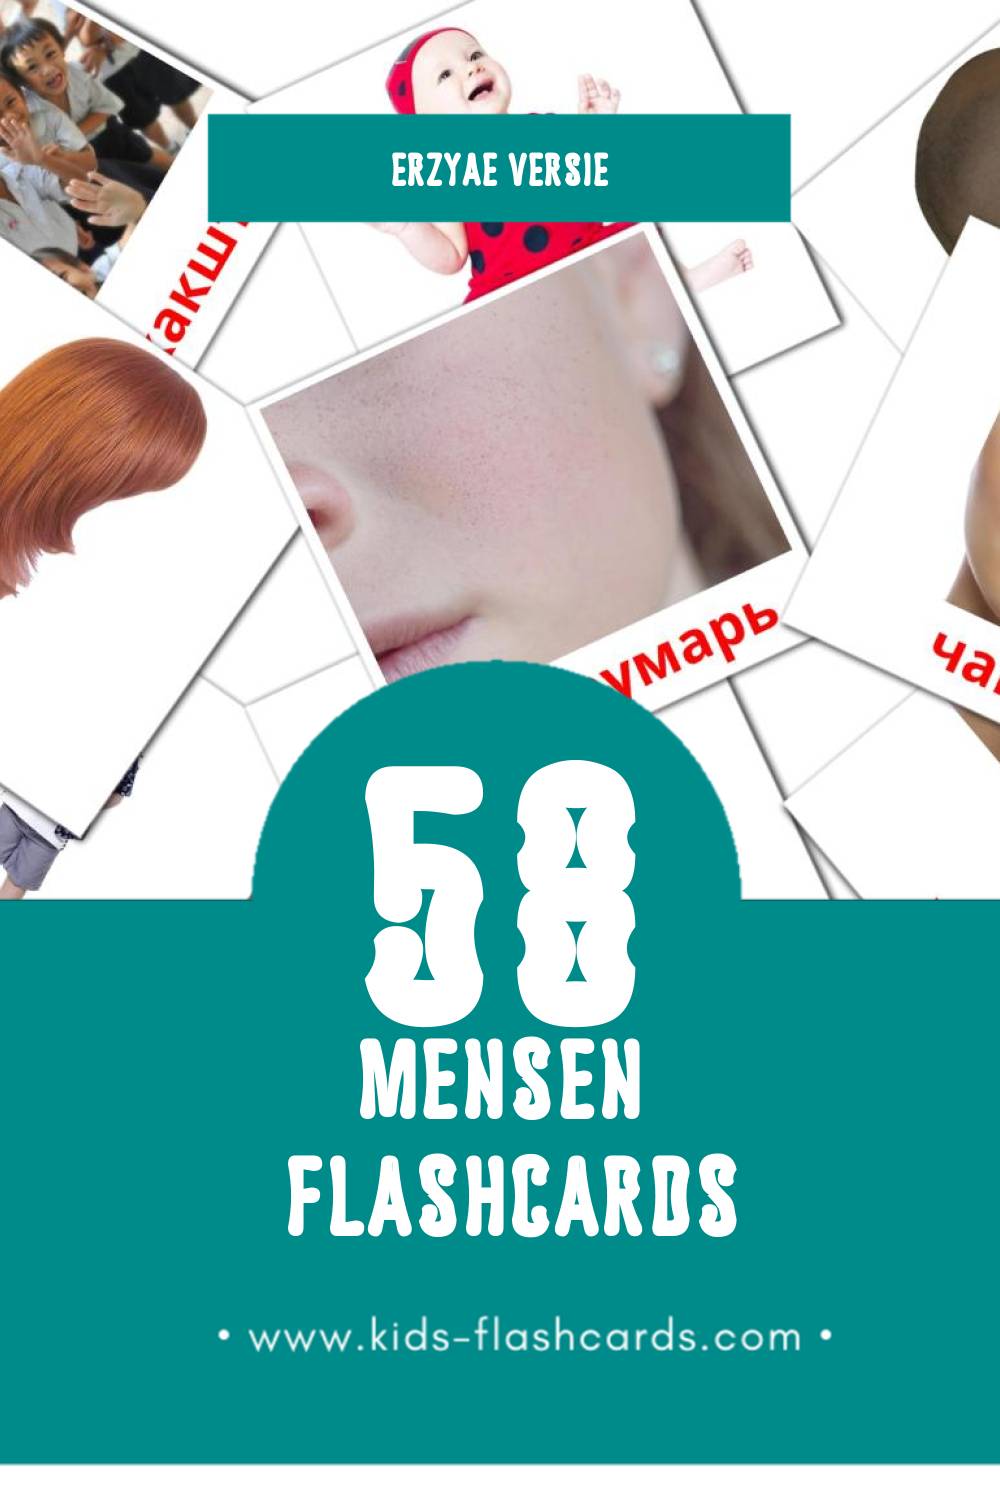 Visuele Ломанть Flashcards voor Kleuters (58 kaarten in het Erzya)